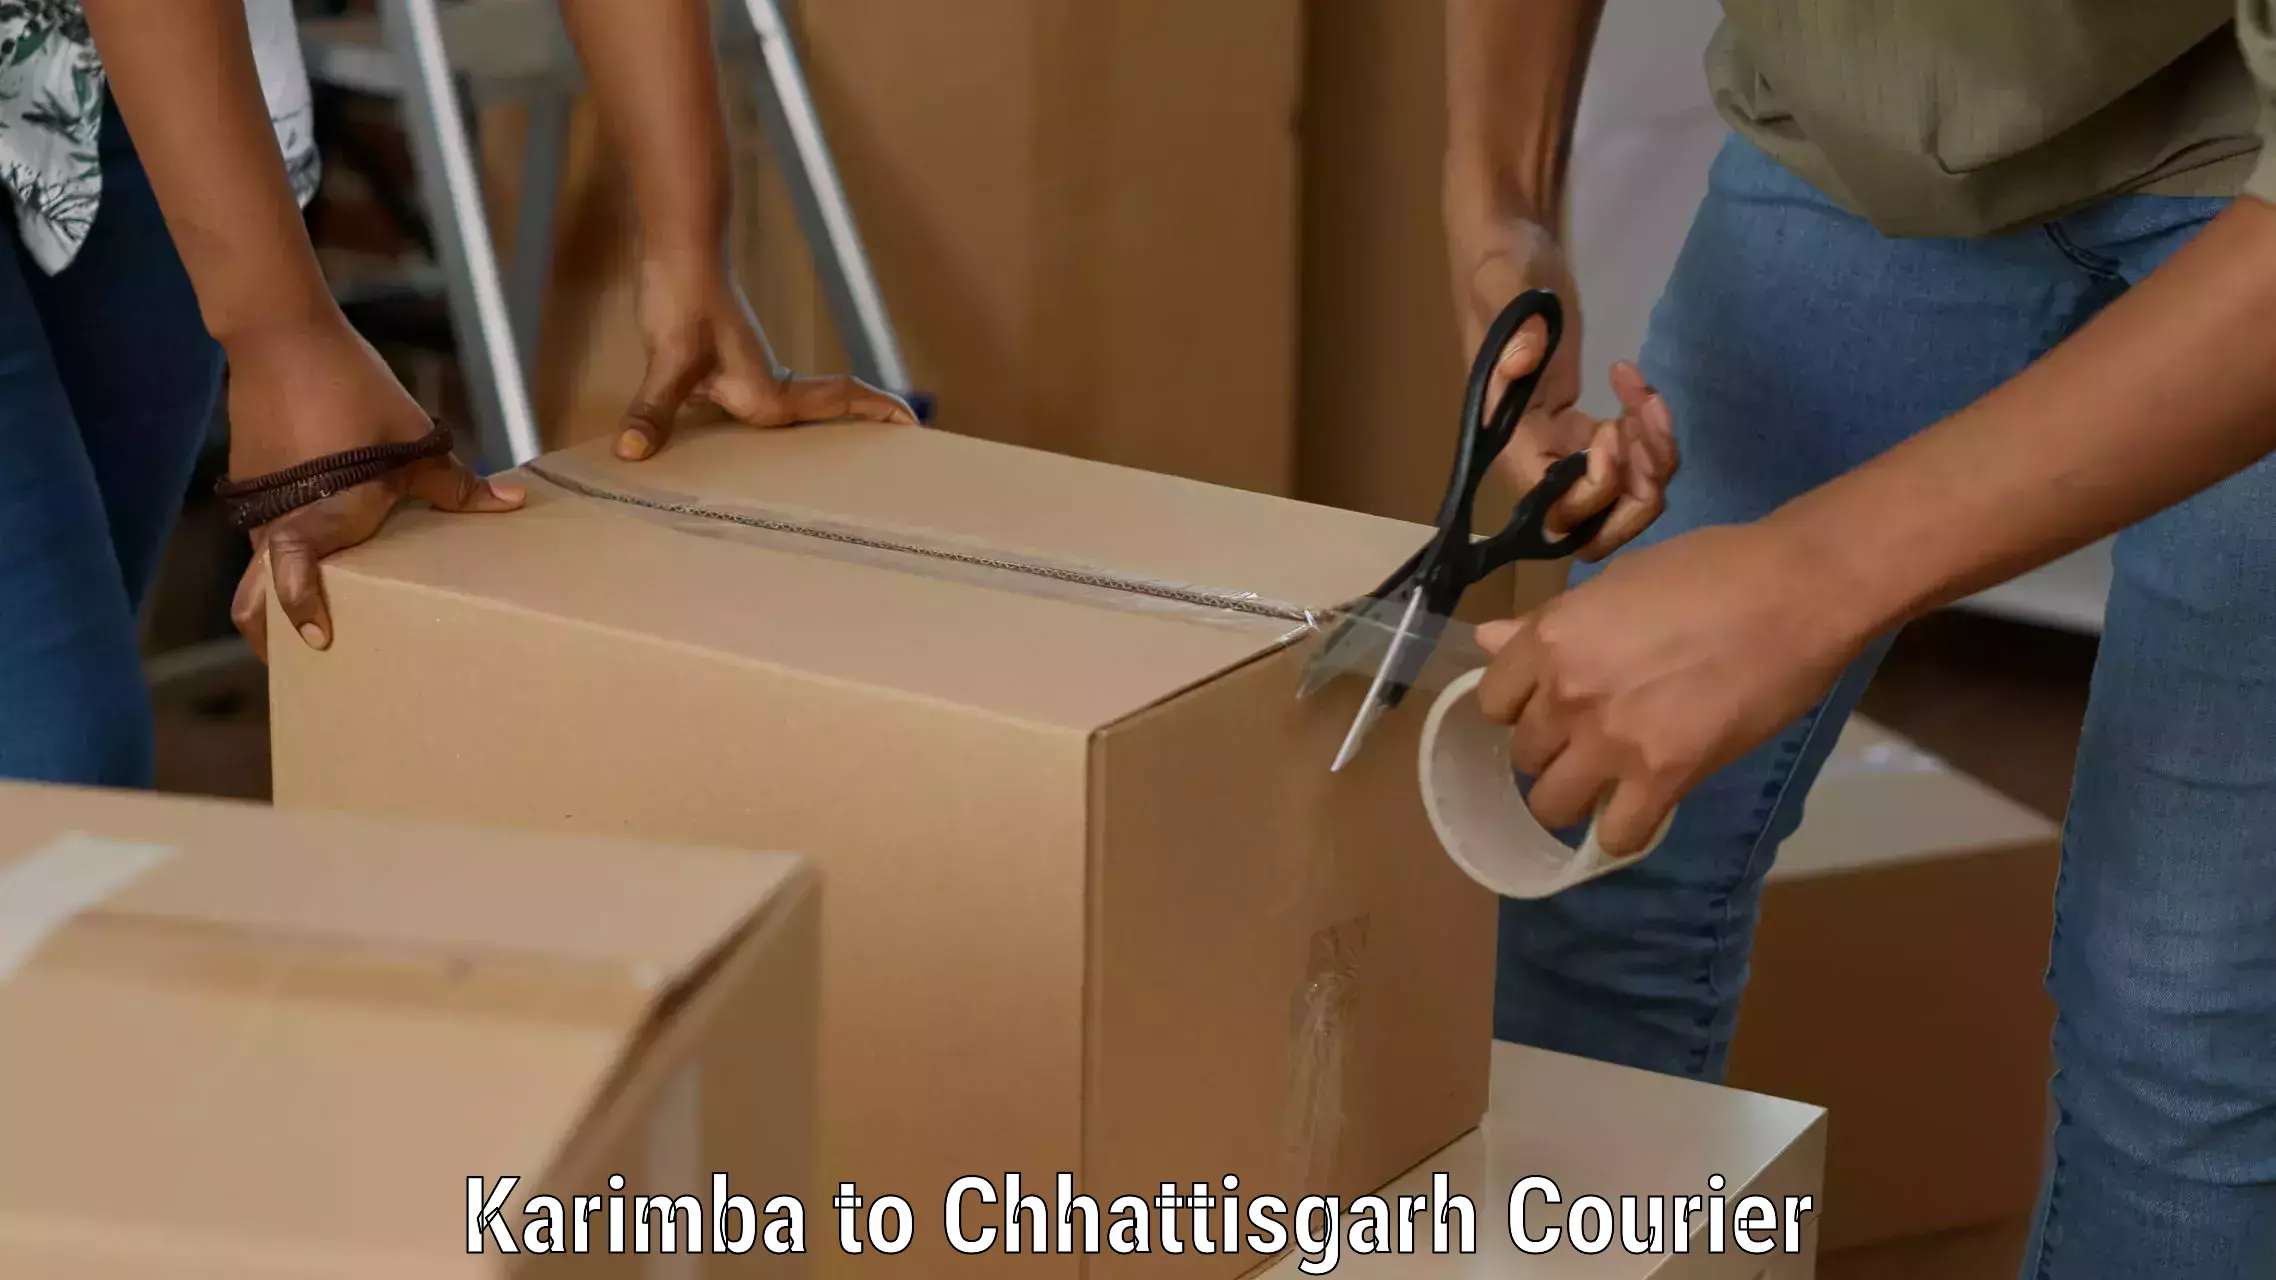 Optimized shipping routes Karimba to Patna Chhattisgarh